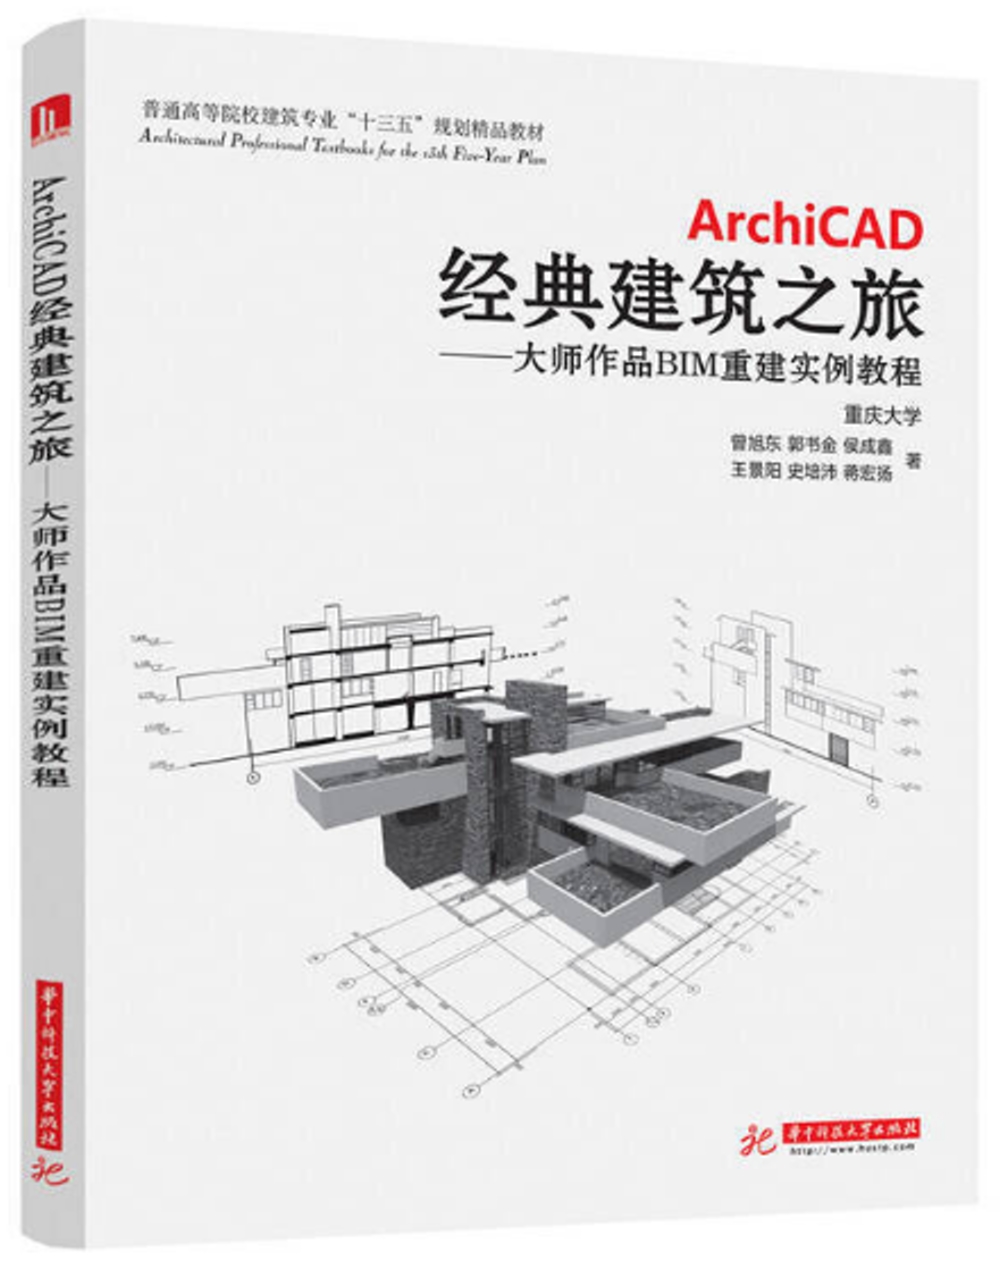 ArchiCAD經典建築之旅：大師作品BIM重建實例教程